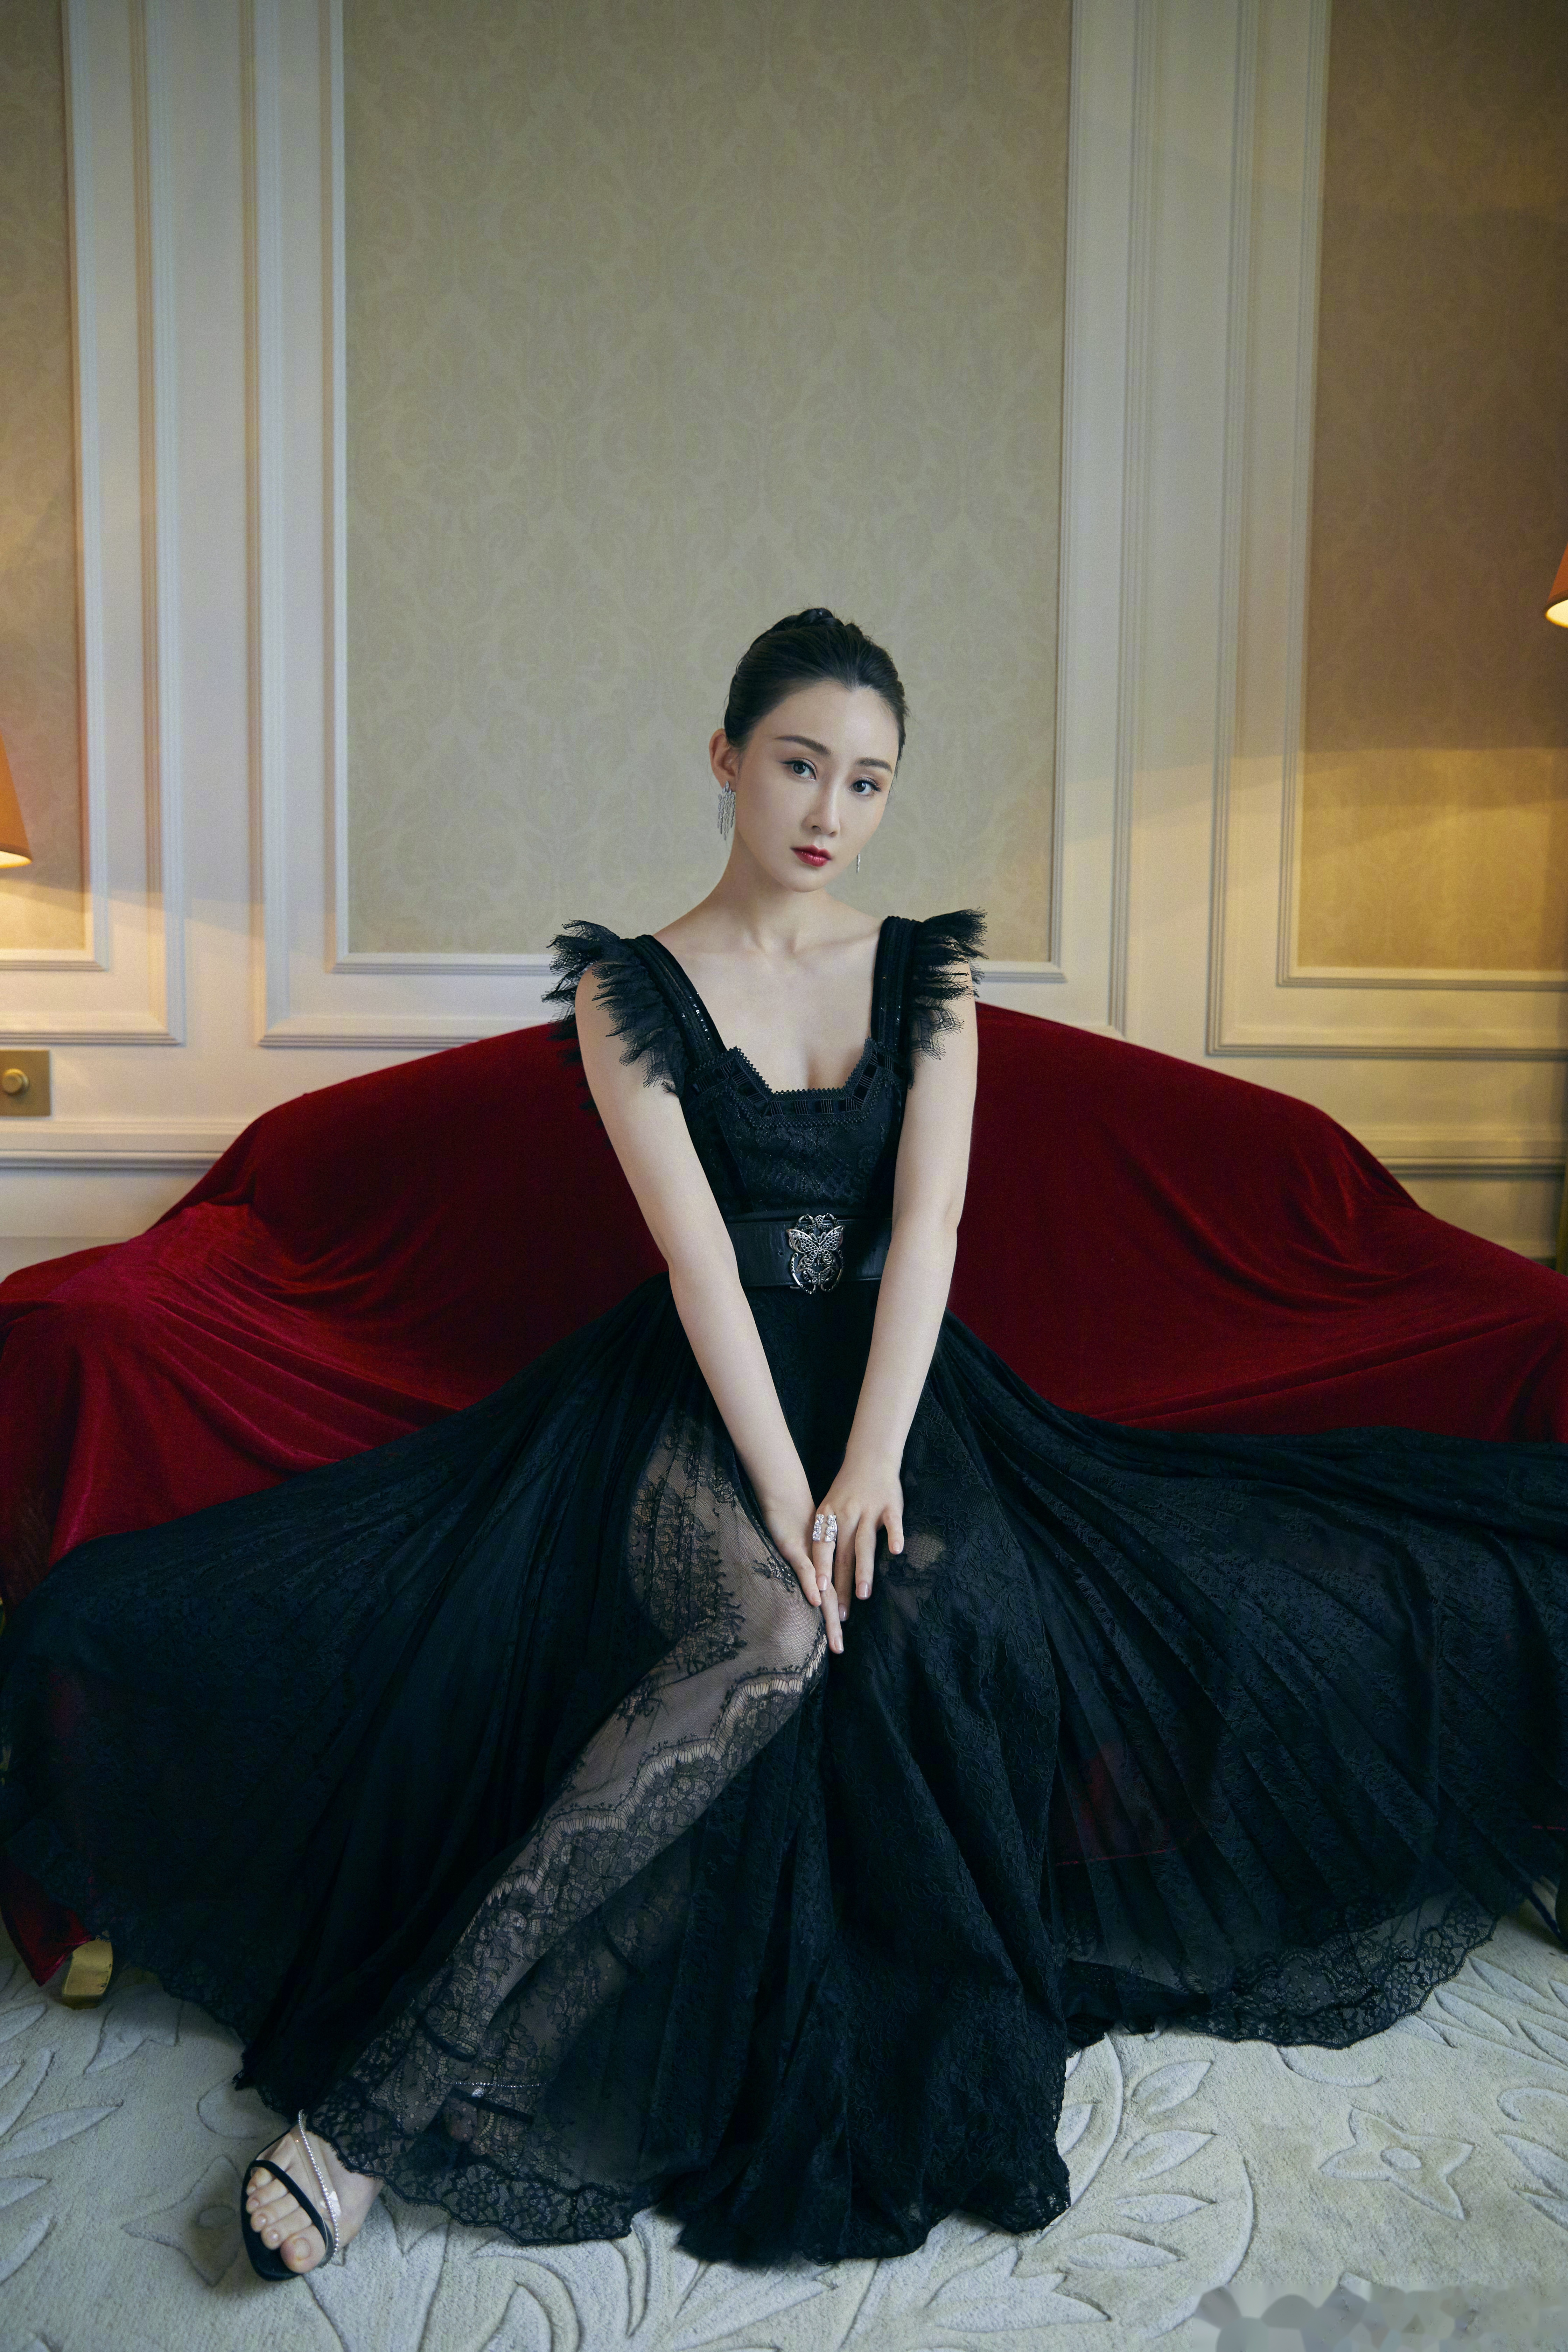 林鹏出席第五届成龙国际动作电影周闭幕式,一袭黑色吊带长裙小露香肩